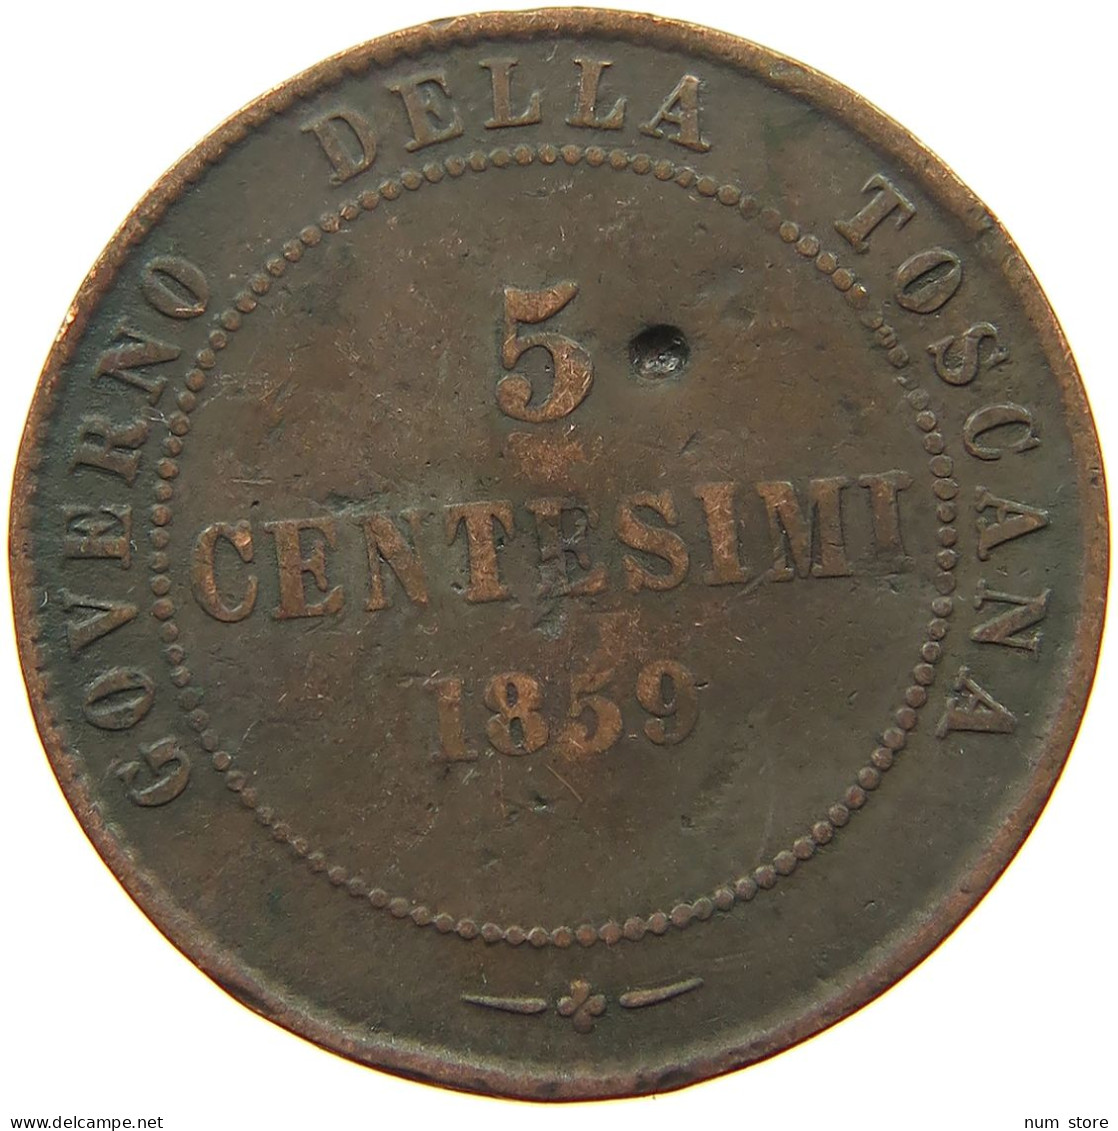 ITALY STATES TUSCANY 5 CENTESIMI 1859 Vittorio Emanuele II. #s077 0431 - Toscana